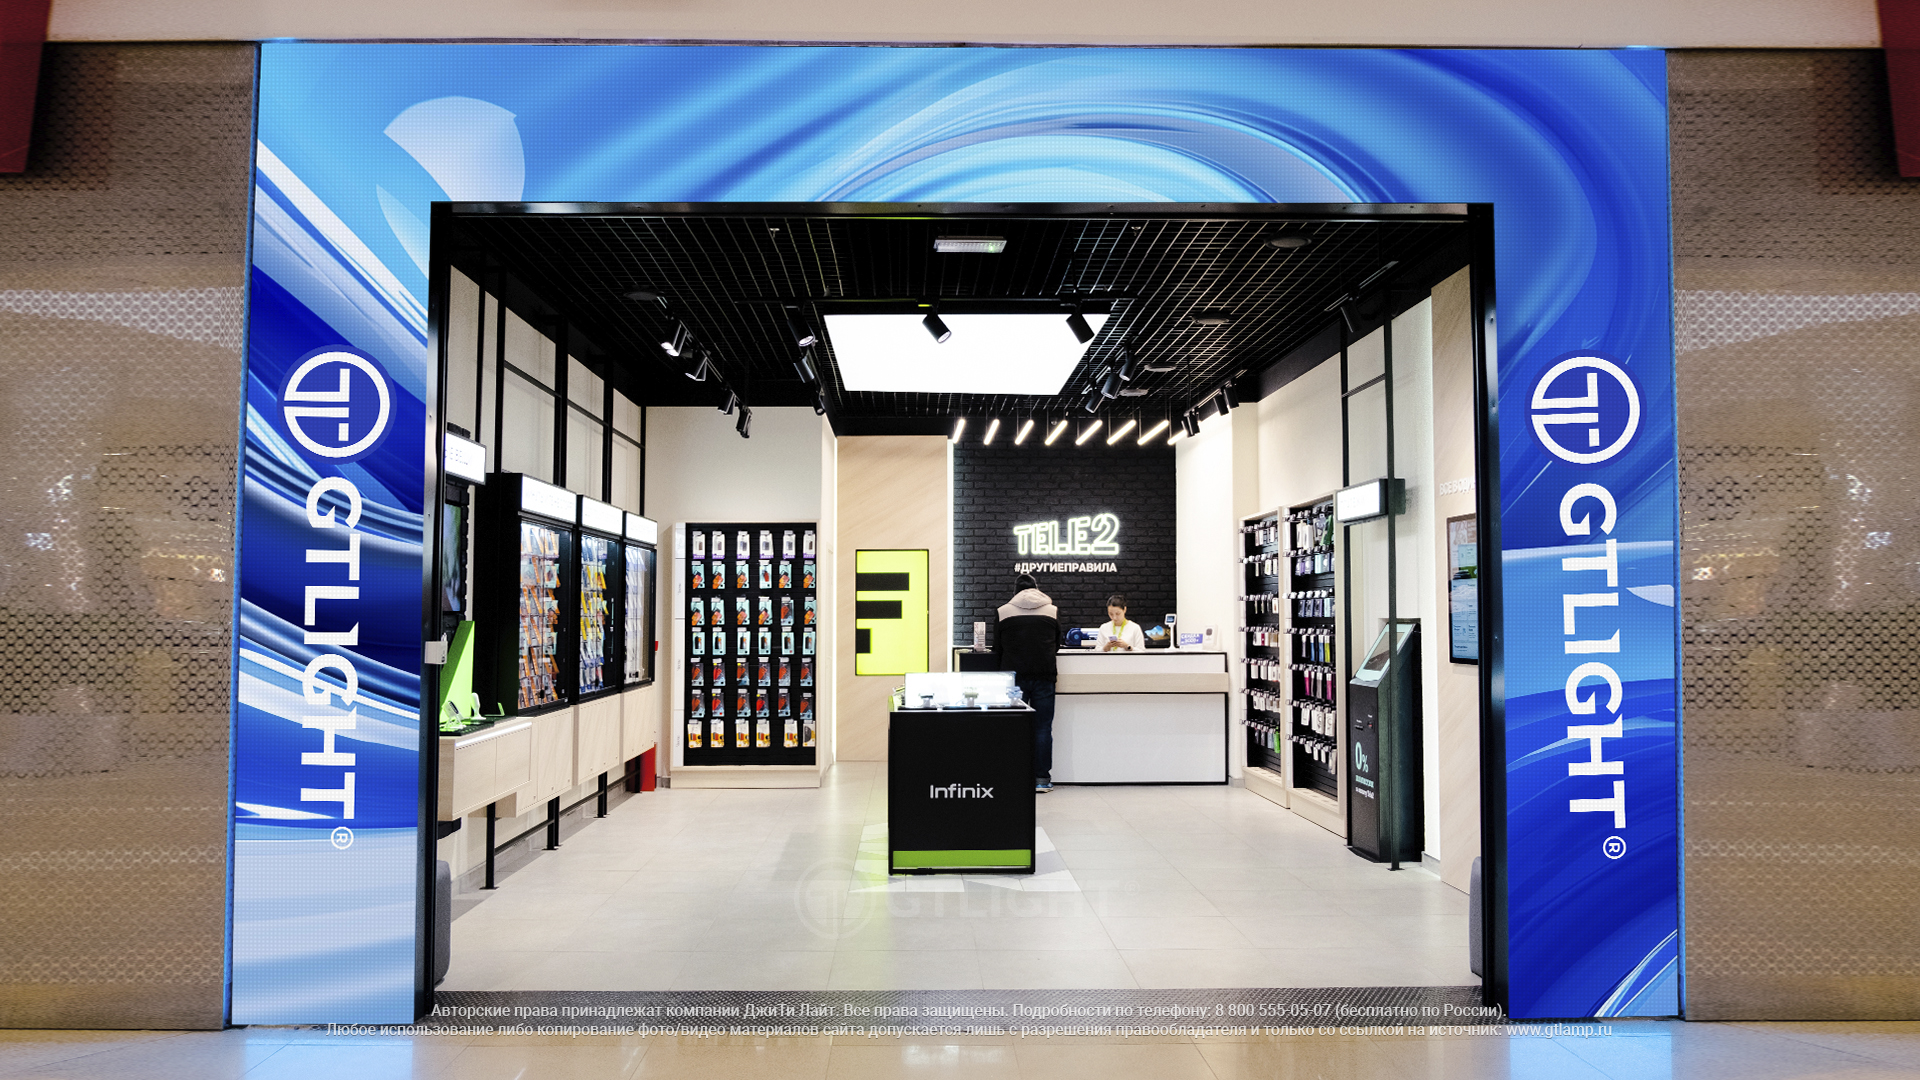 Светодиодный экран-арка – магический портал к привлечению клиентов и повышению продаж компании!